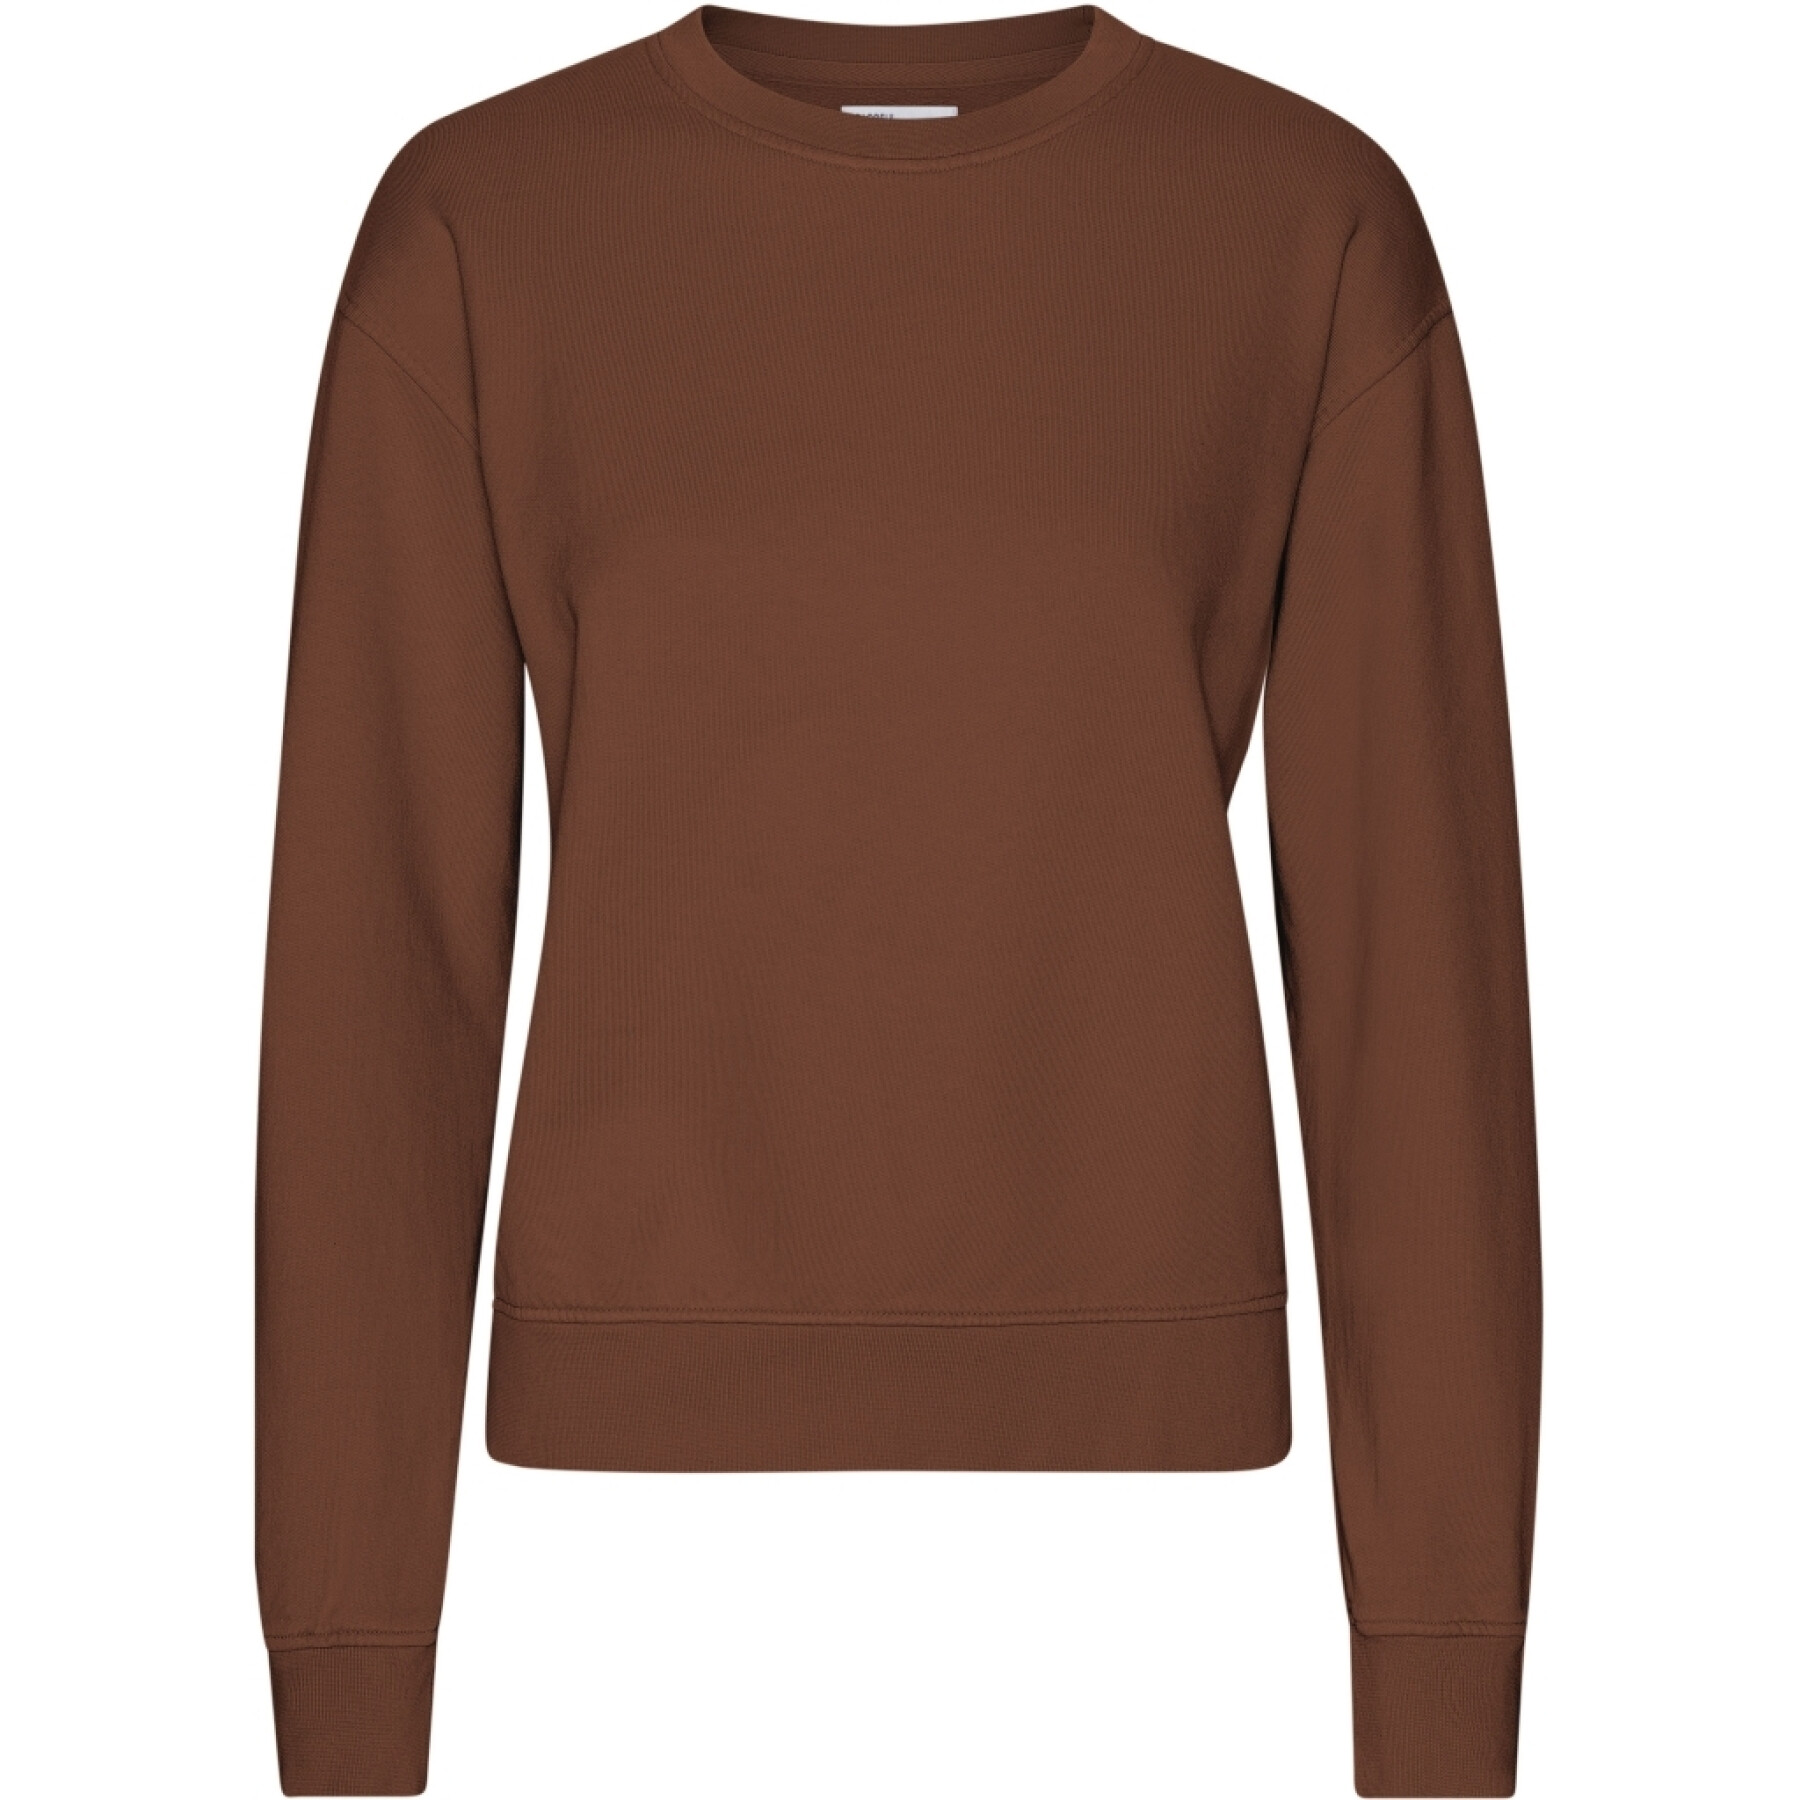 Sweatshirt mit Rundhalsausschnitt, Damen Colorful Standard Classic Organic Cinnamon Brown